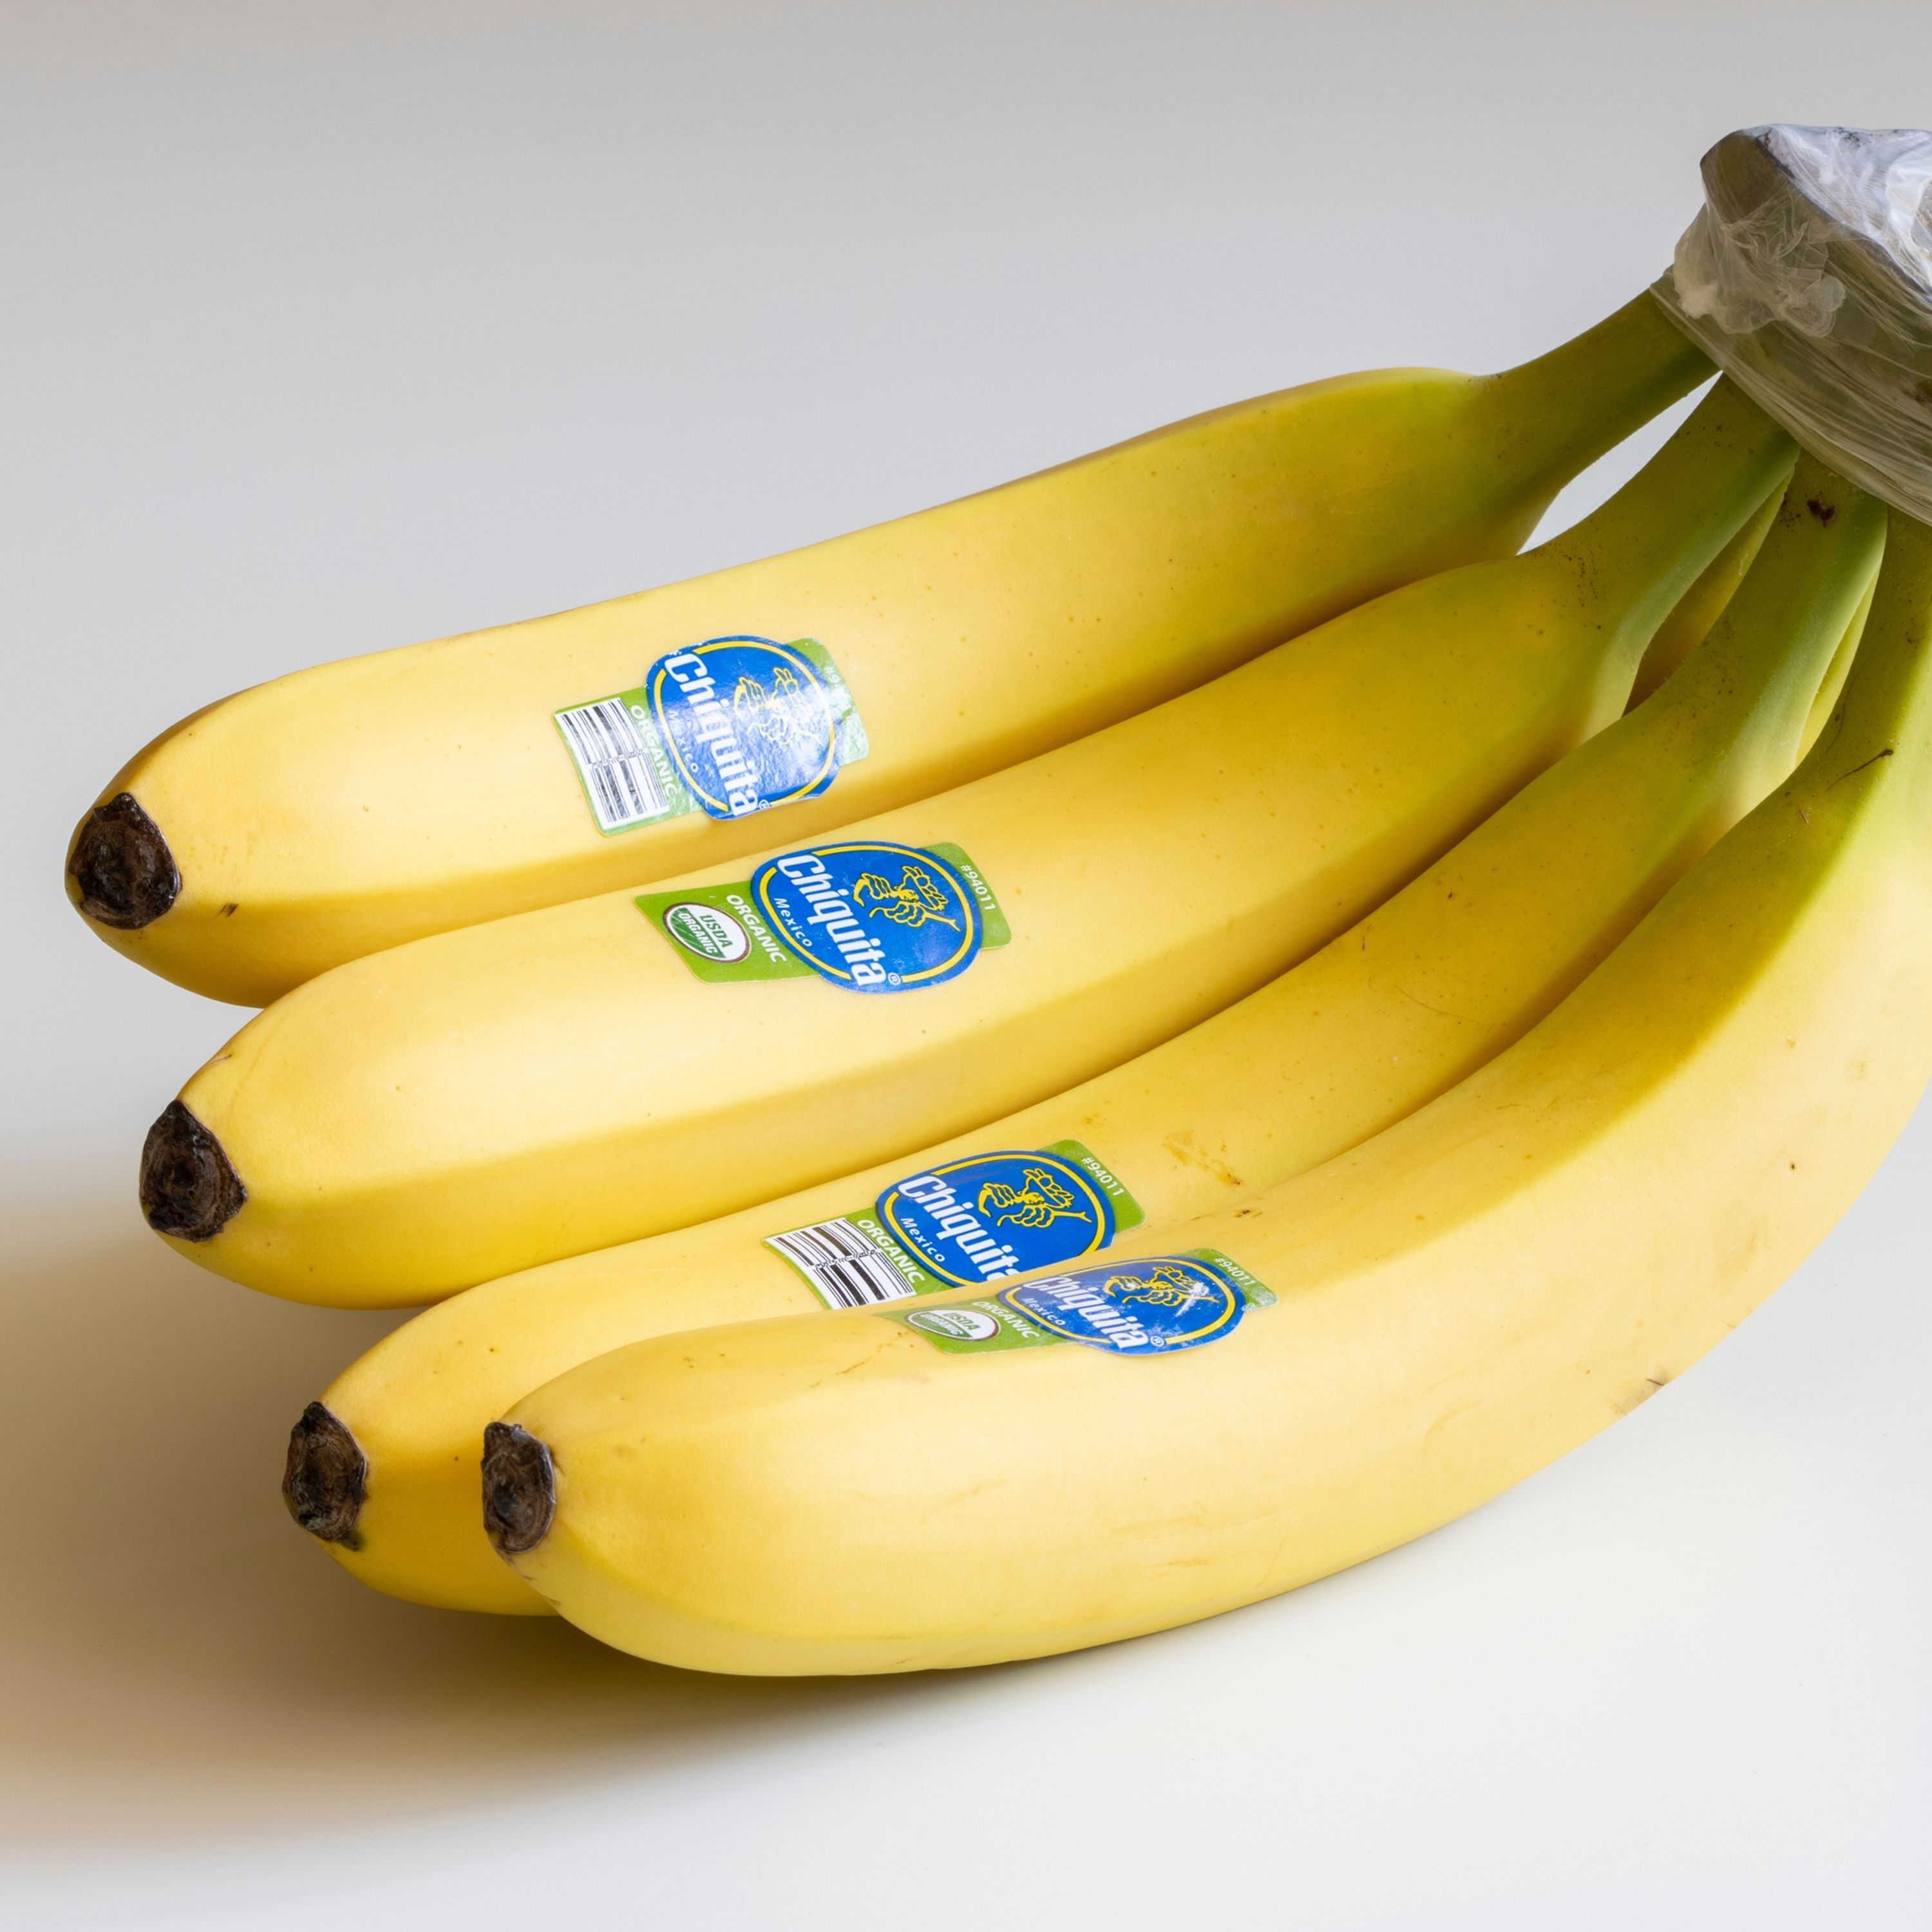 Génétique : Les bananes sont-elles un fruit modifié ?